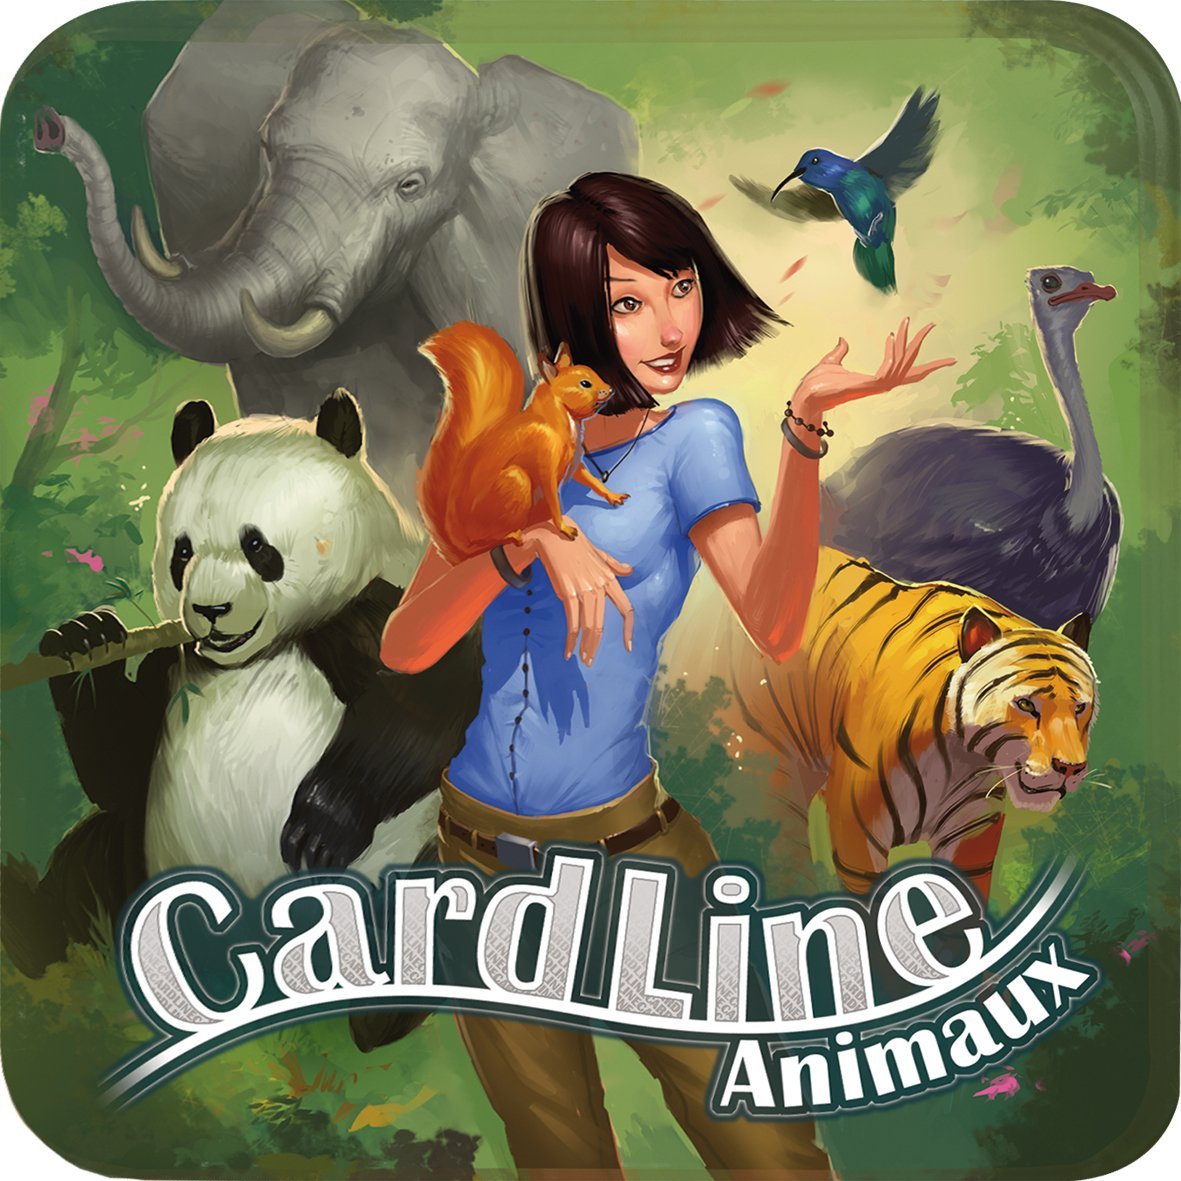 Cardline animaux